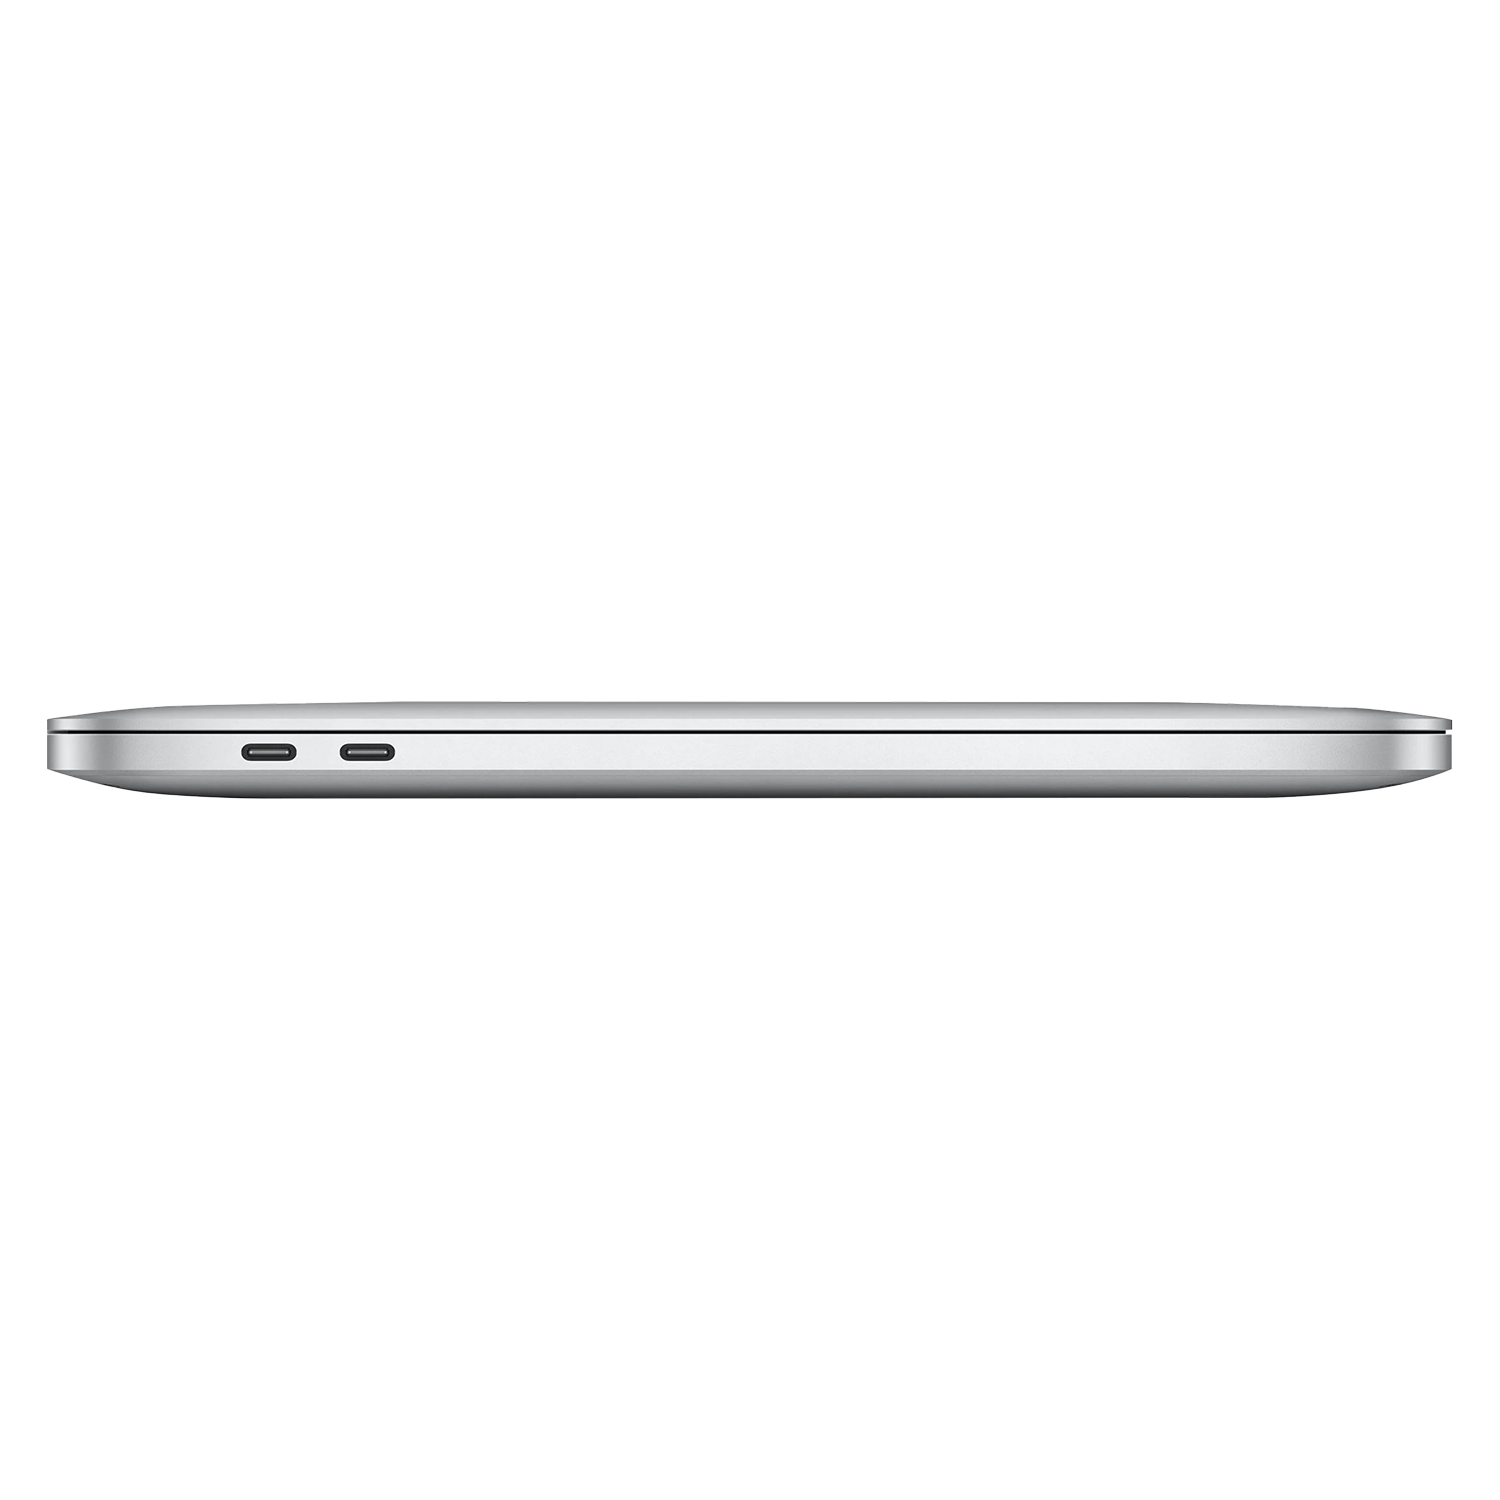 Apple Macbook Pro 2022 MNEP3LL/A 13.3" Chip M2 256GB SSD 8GB RAM - Prata
